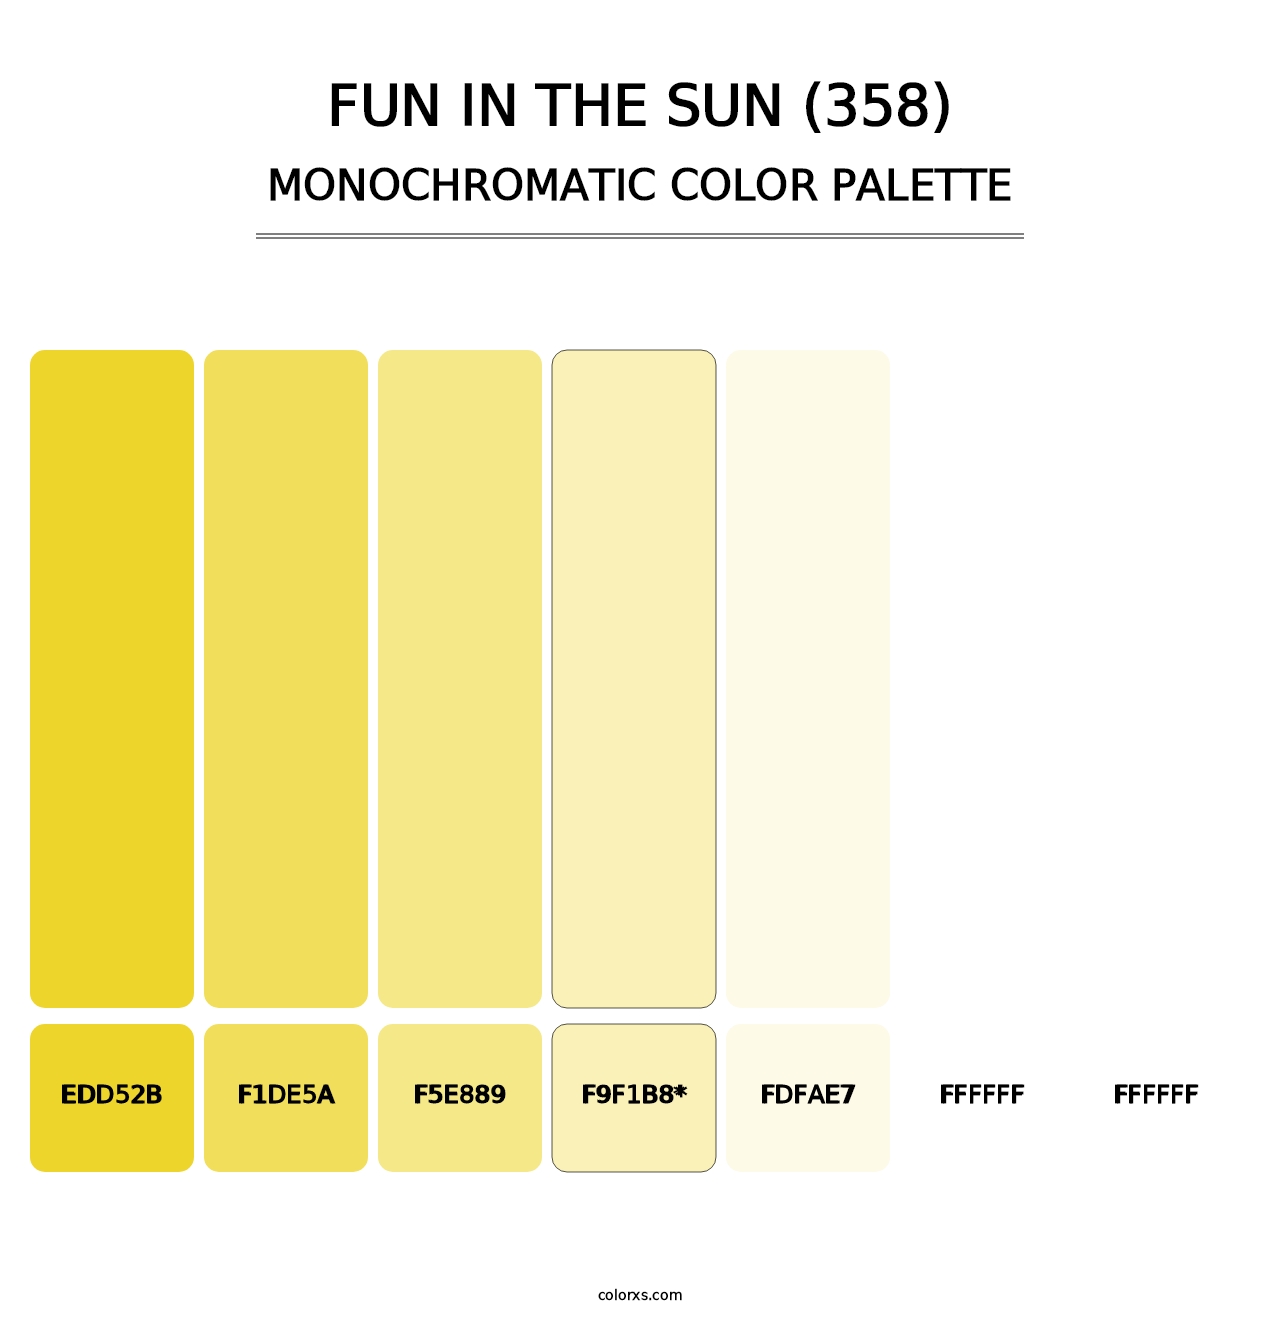 Fun in the Sun (358) - Monochromatic Color Palette